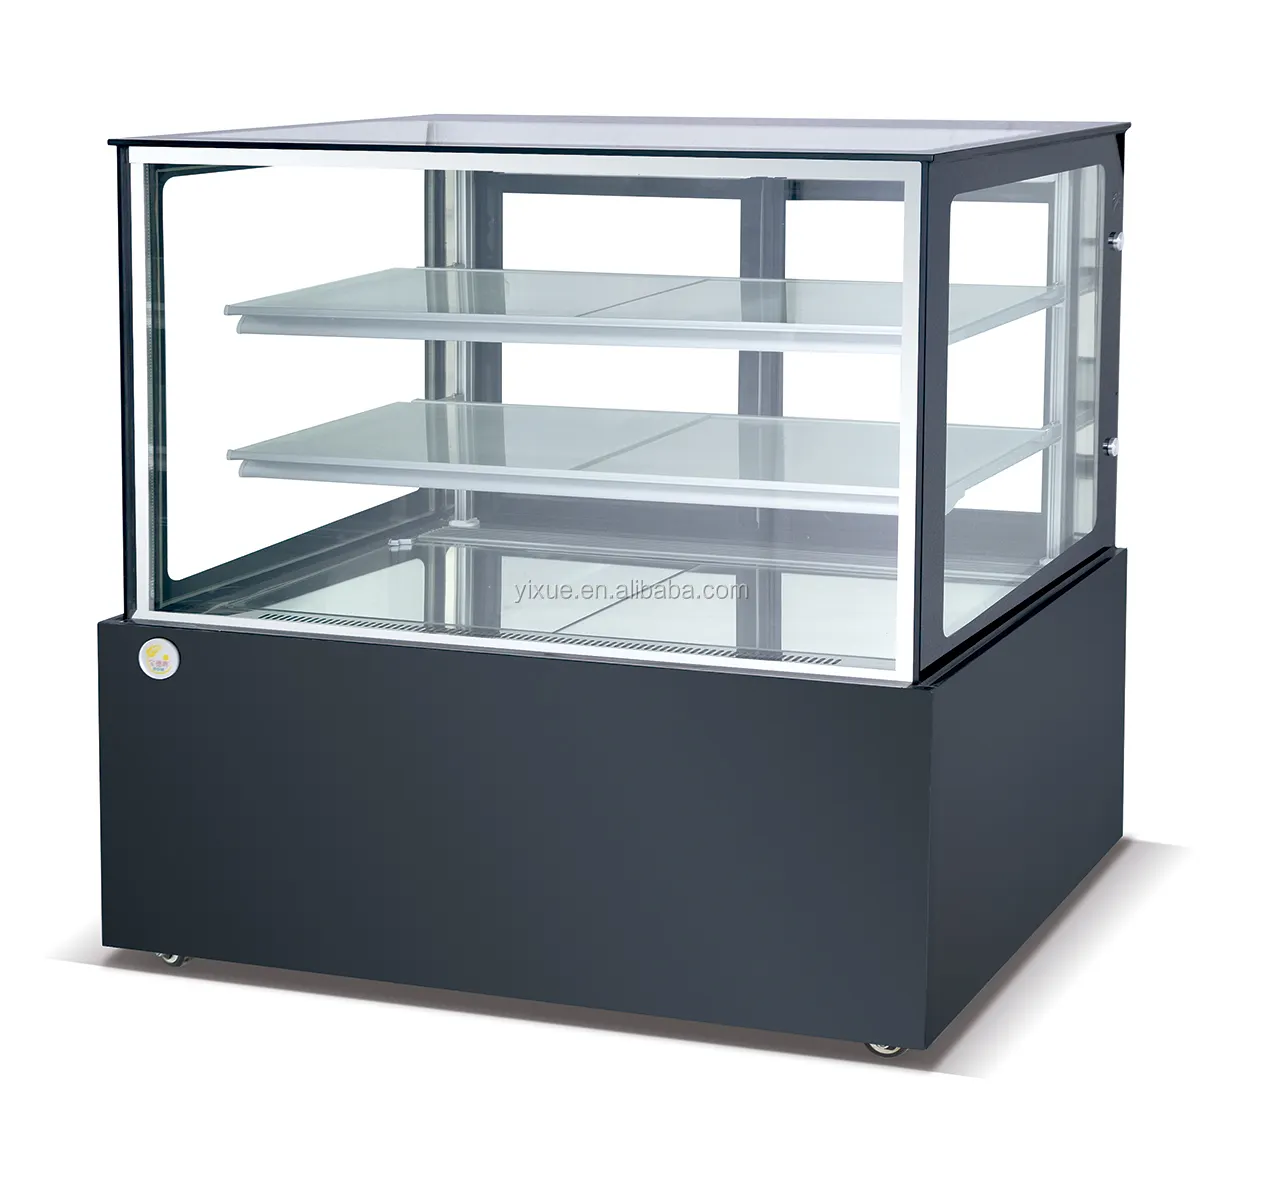 1,2 m/1,5 m heißer verkauf kommerziellen rechteckigen süßwaren kuchen kühlschrank schaufenster